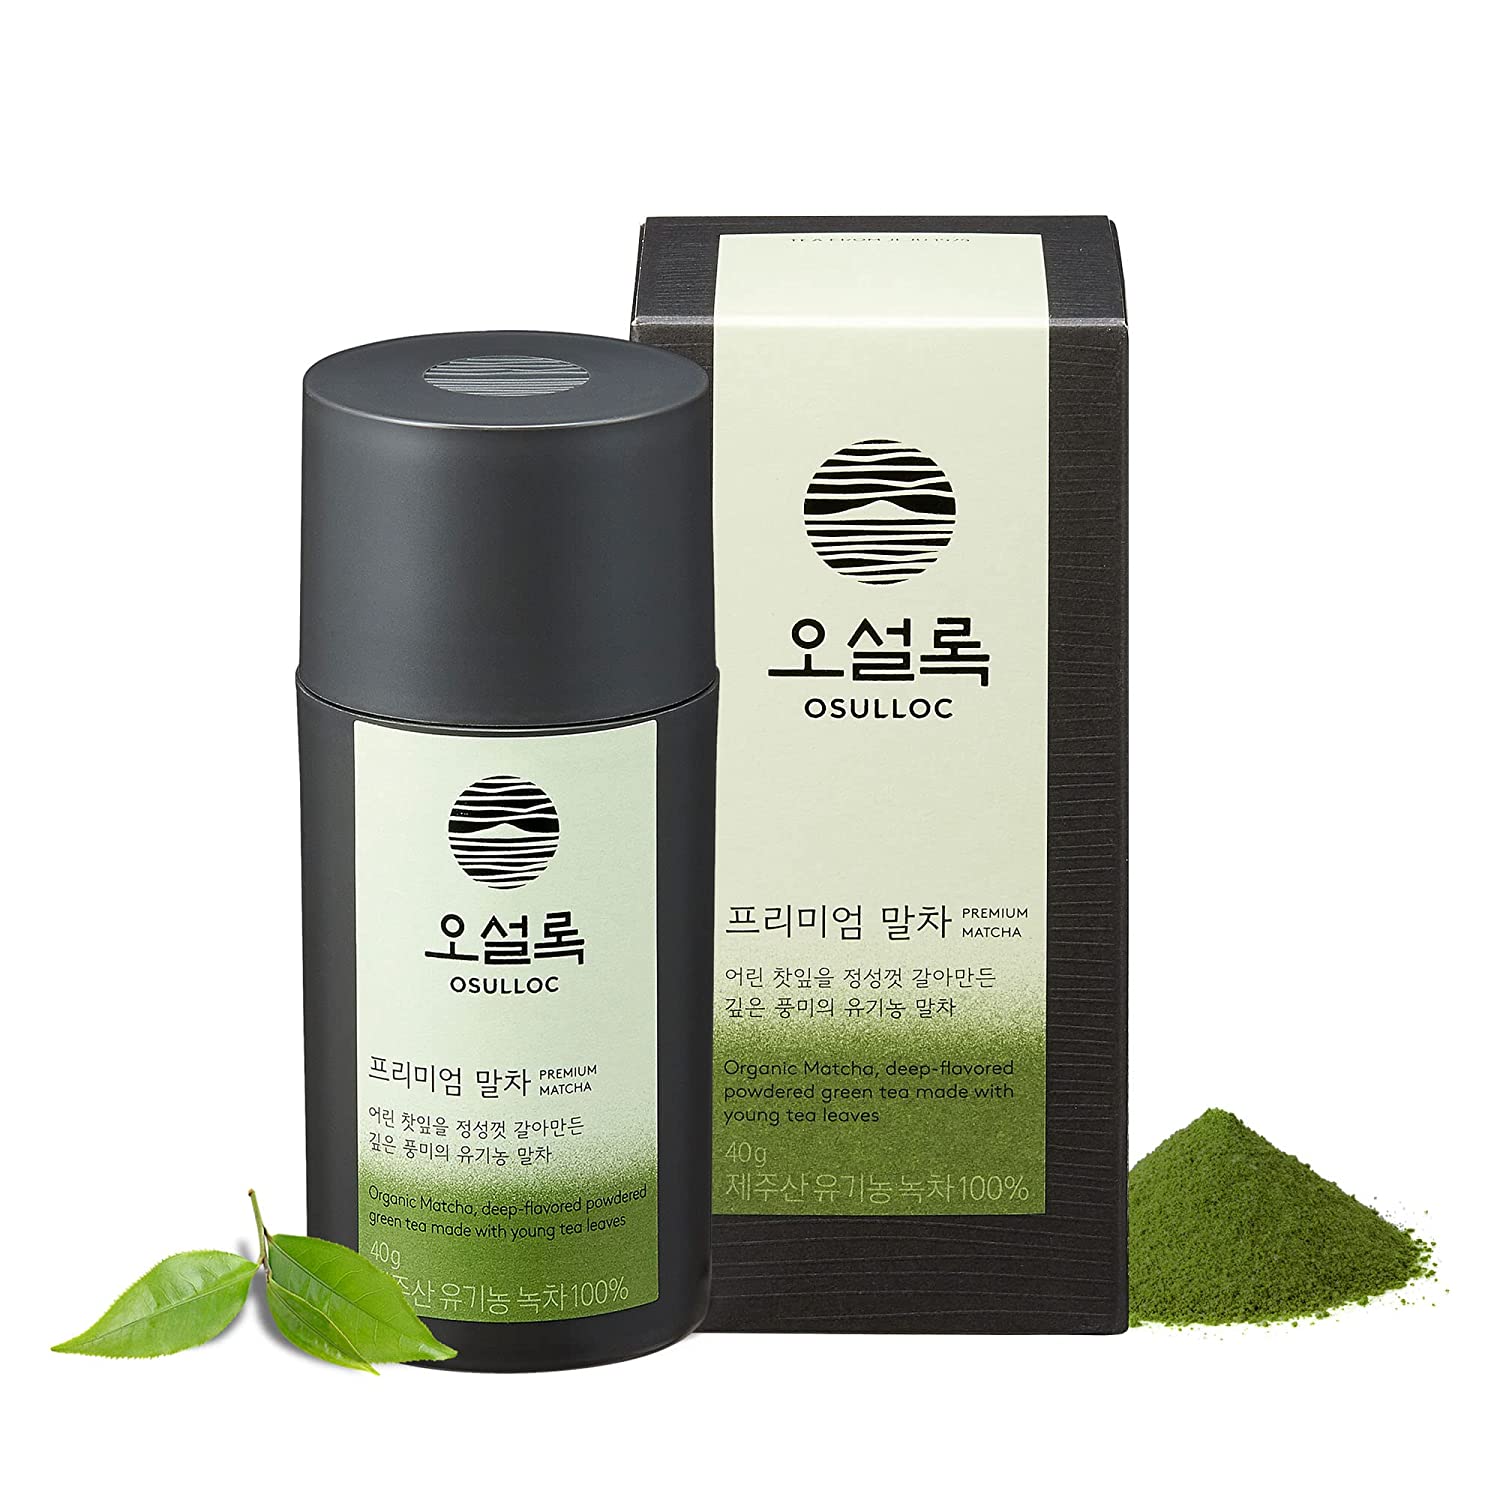 [오설록 프리미엄 말차] OSULLOC Premium Matcha Powder (Unsweetened), Premium Organic| Pure Leaf Green Tea from Jeju | 40g